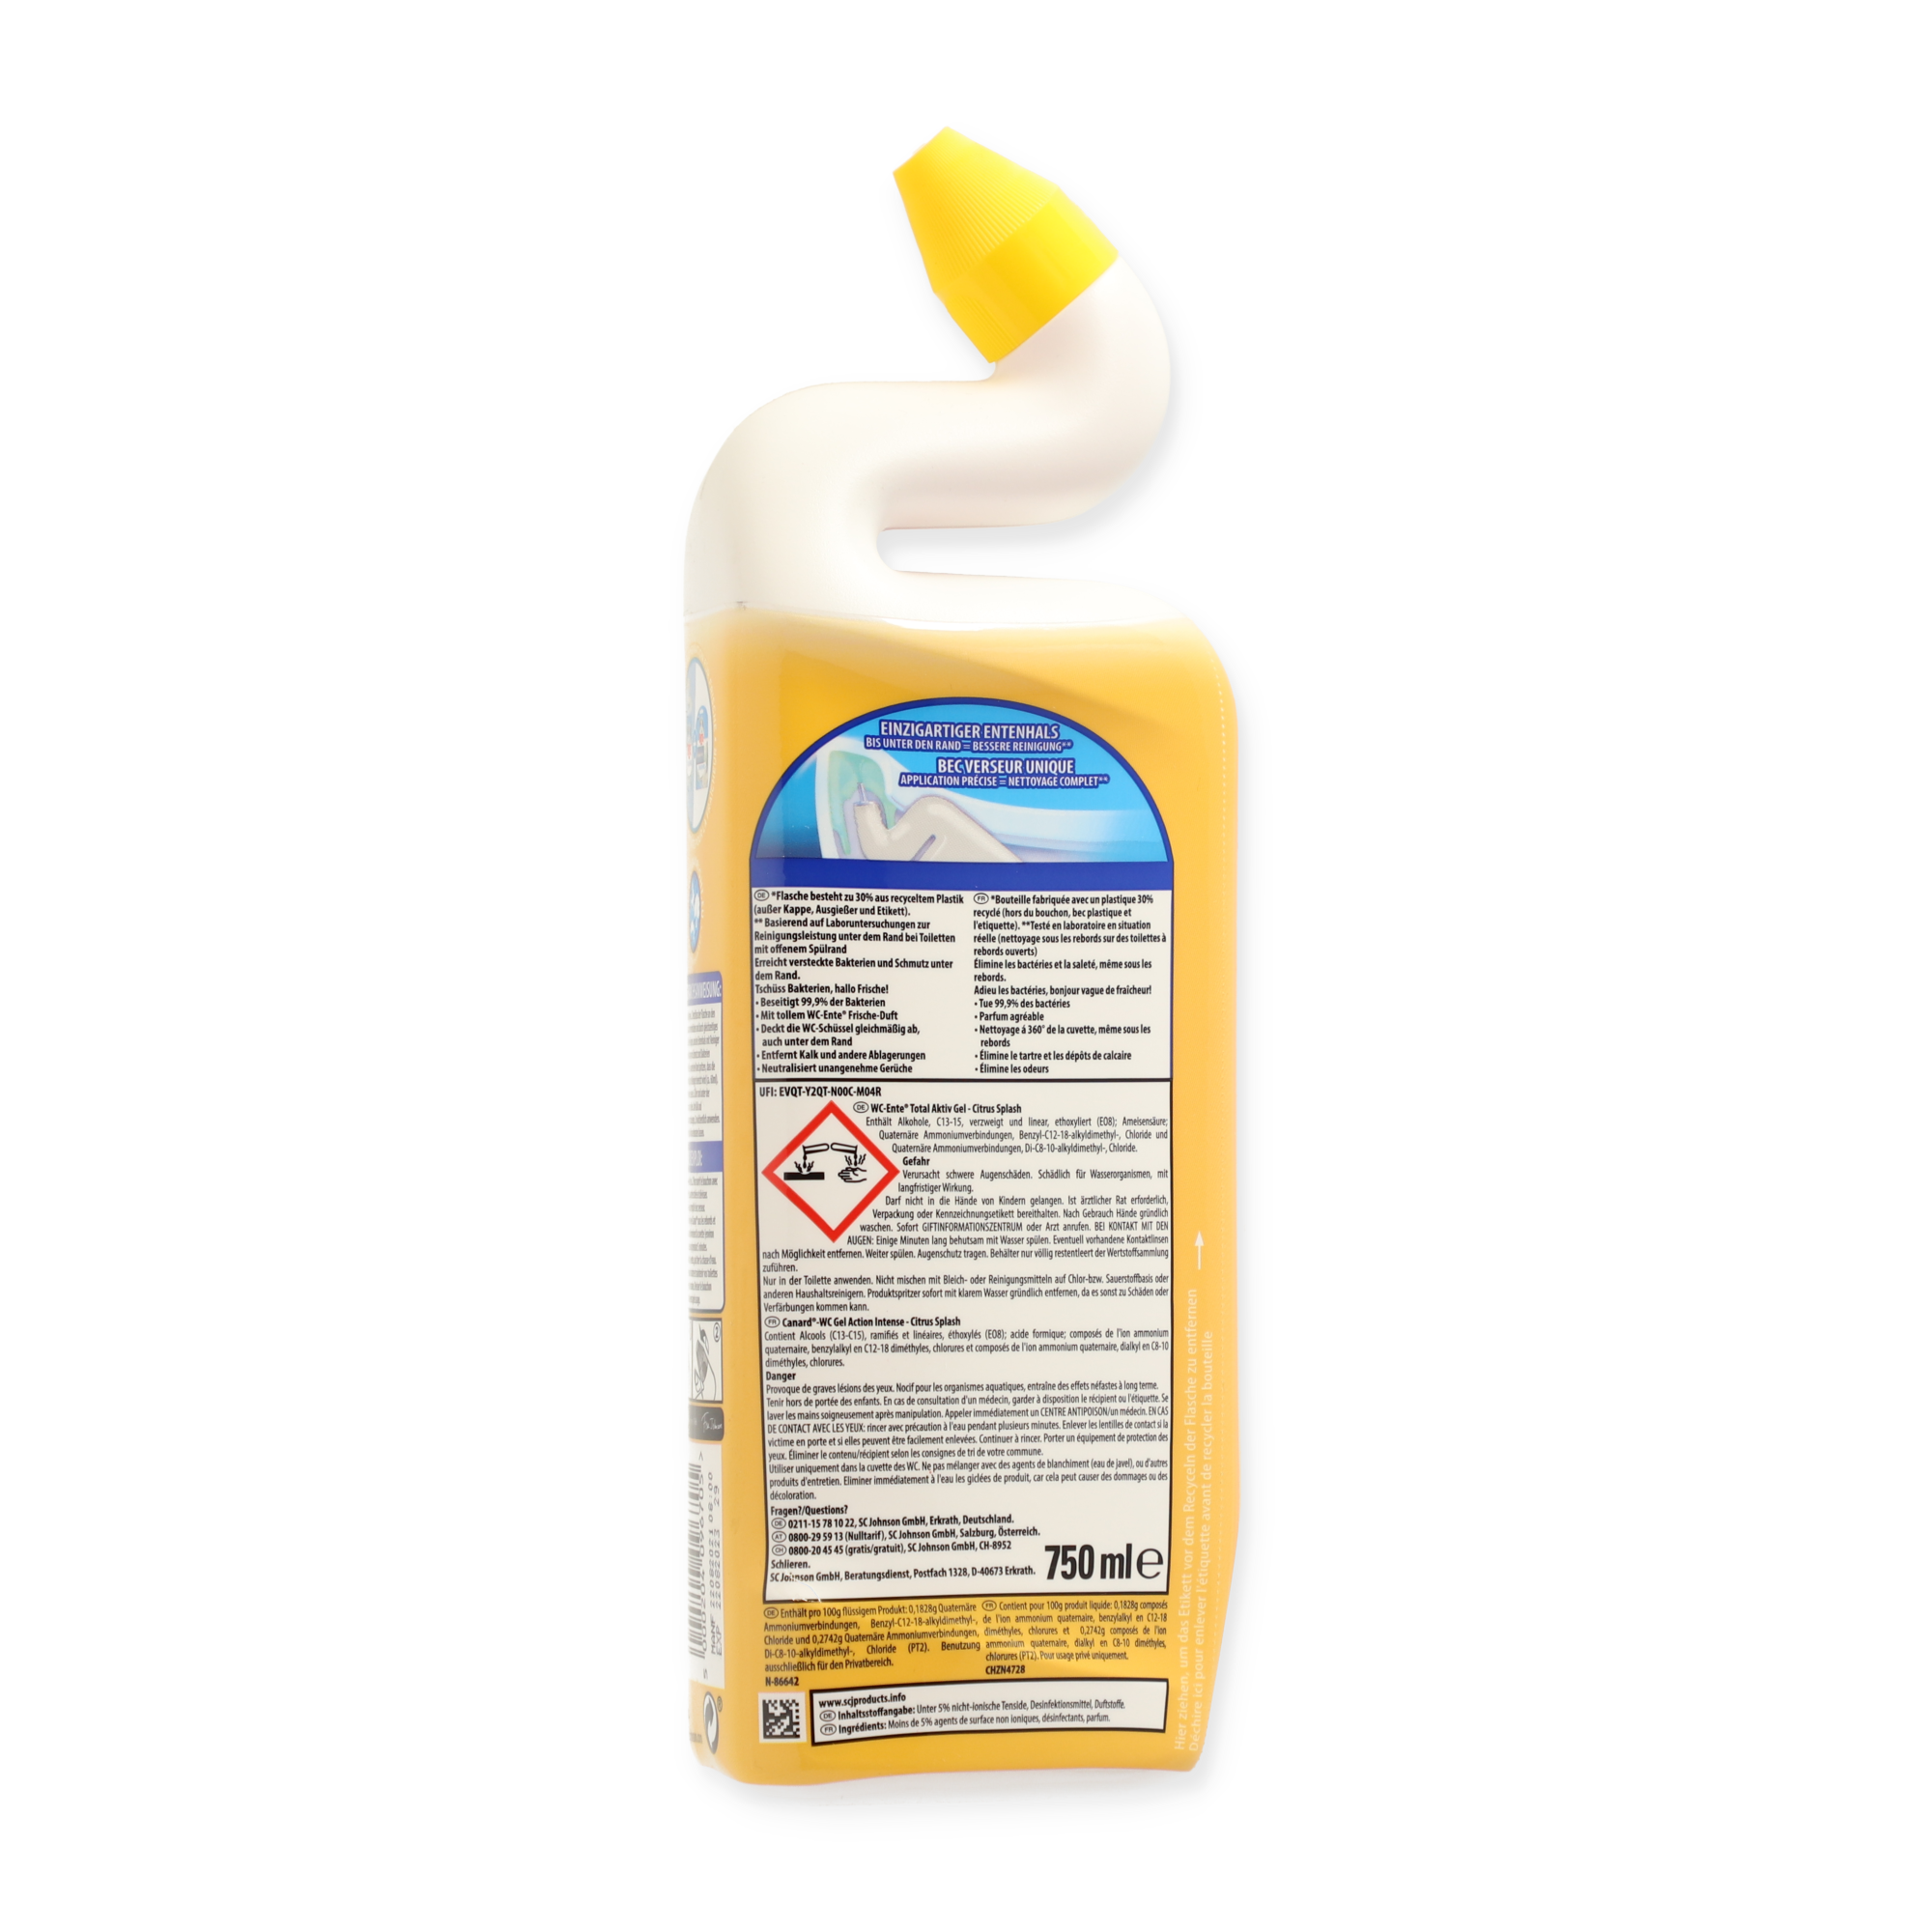 WC-Reiniger 'Total Aktiv Gel' Citrus Splash 750 ml + product picture